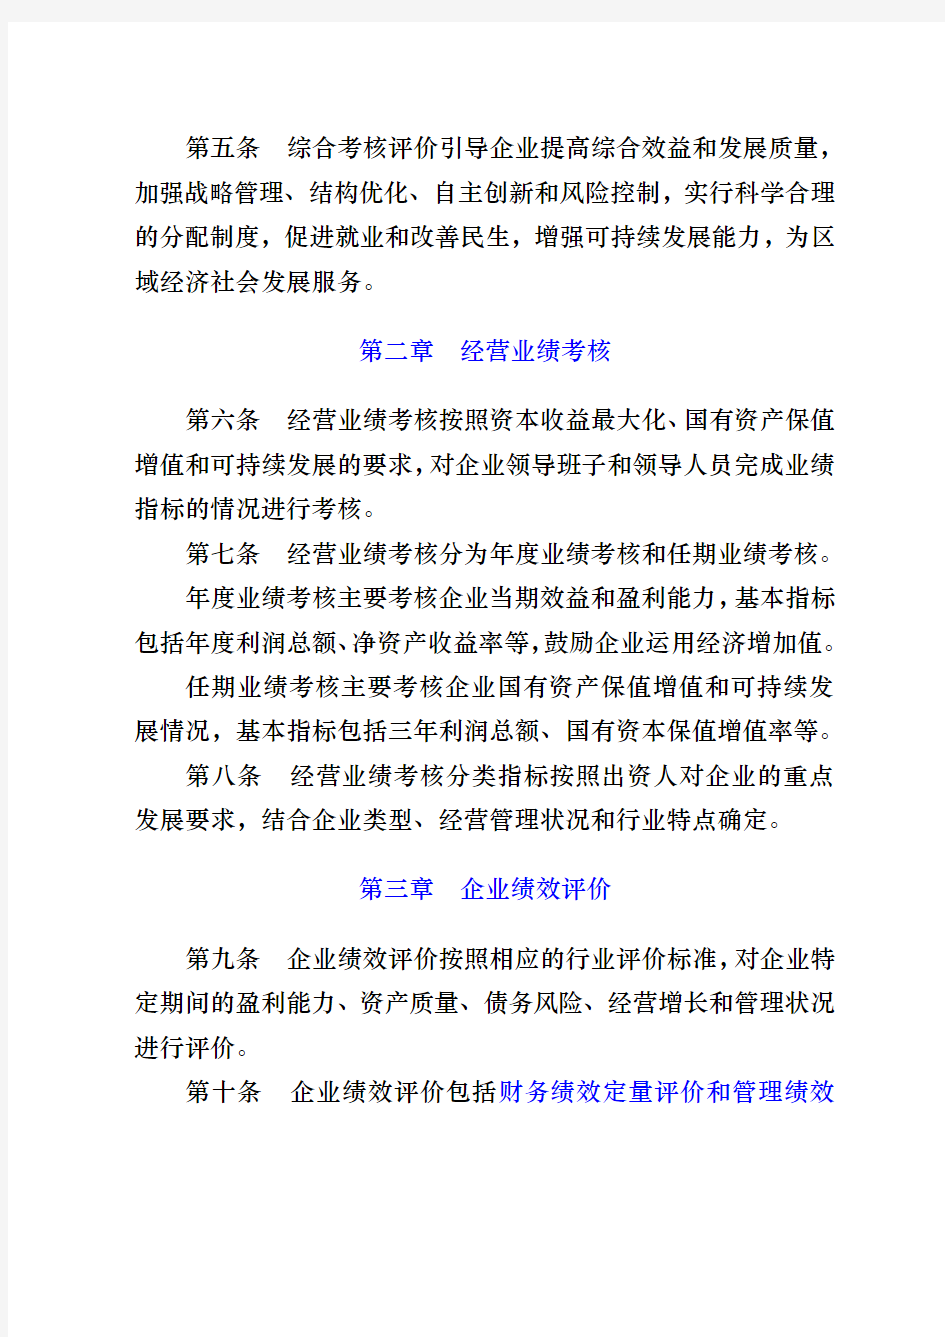 北京东城区区属国有企业领导班子和领导人员综合考核评价办法